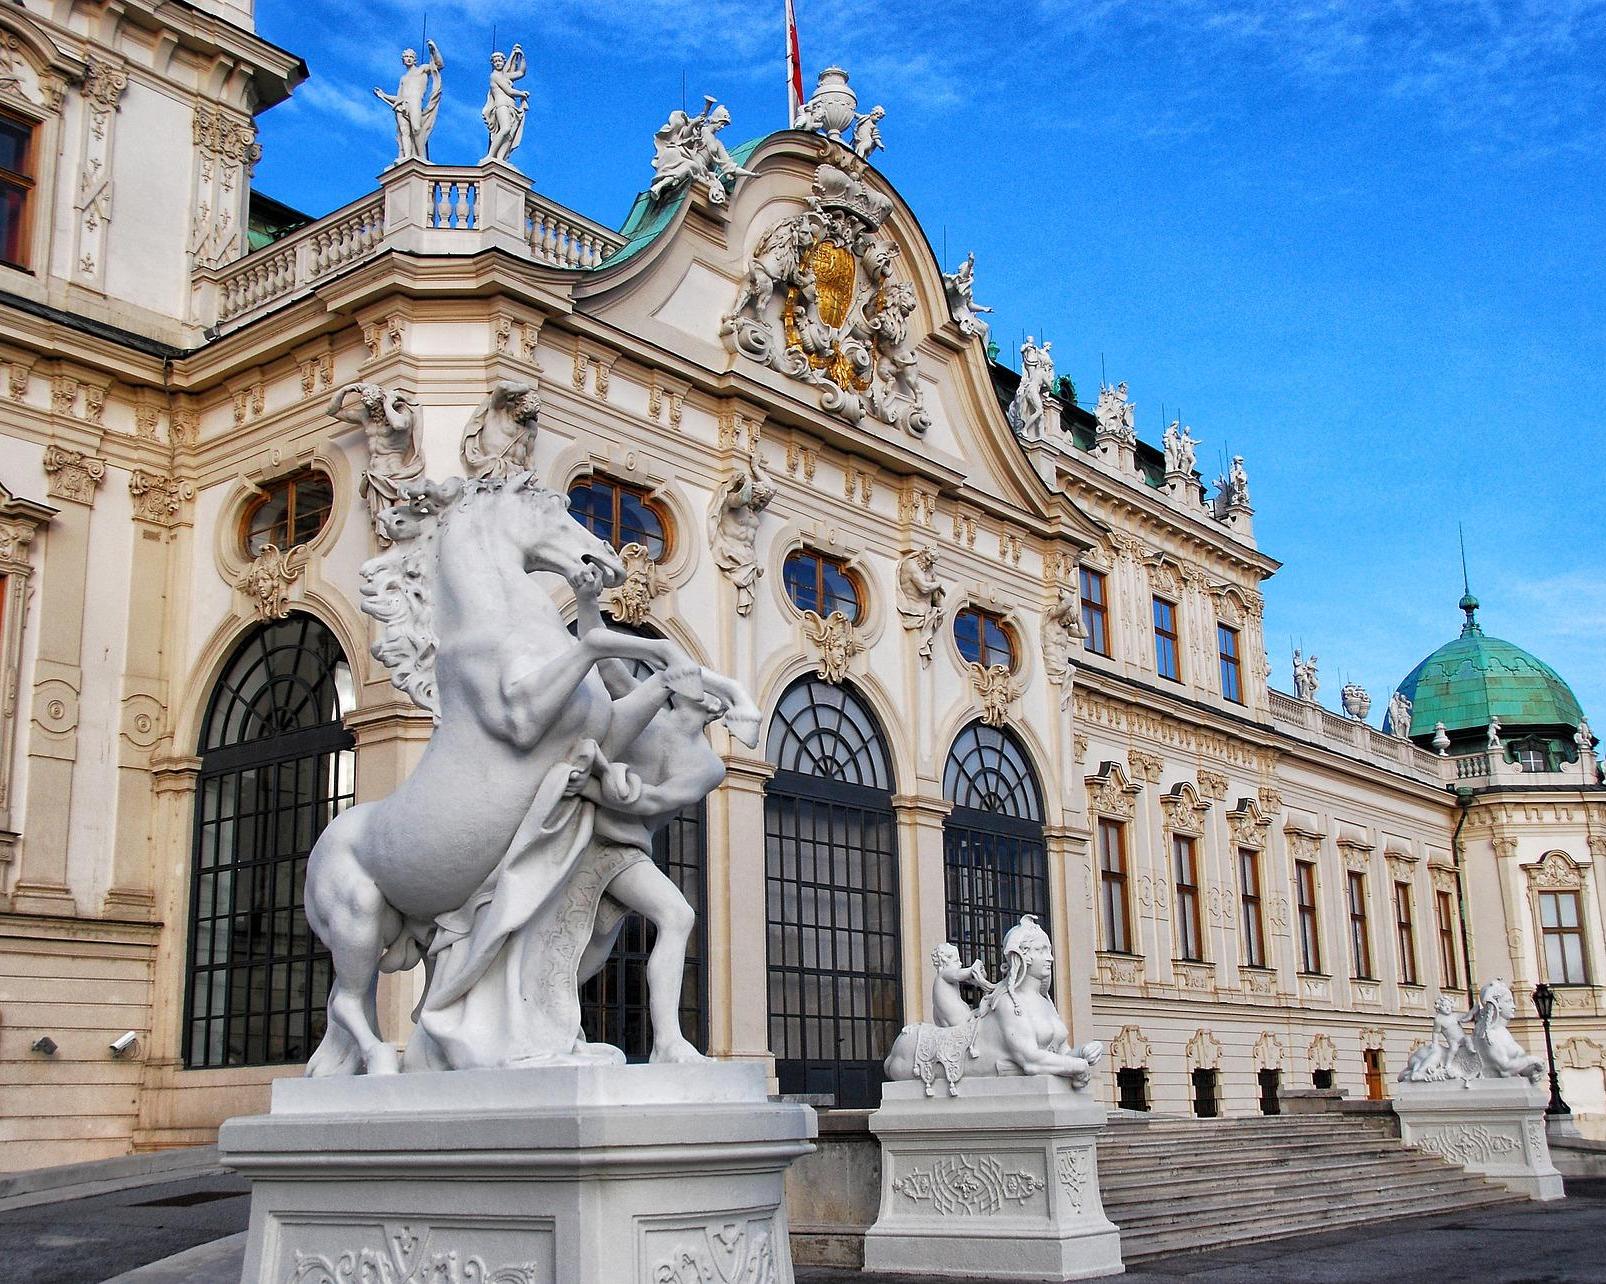 Viaje a Viena, Austria. 4 días descubriendo Viena desde 251,- - Encuentra el viaje de sueños | Viajes.com